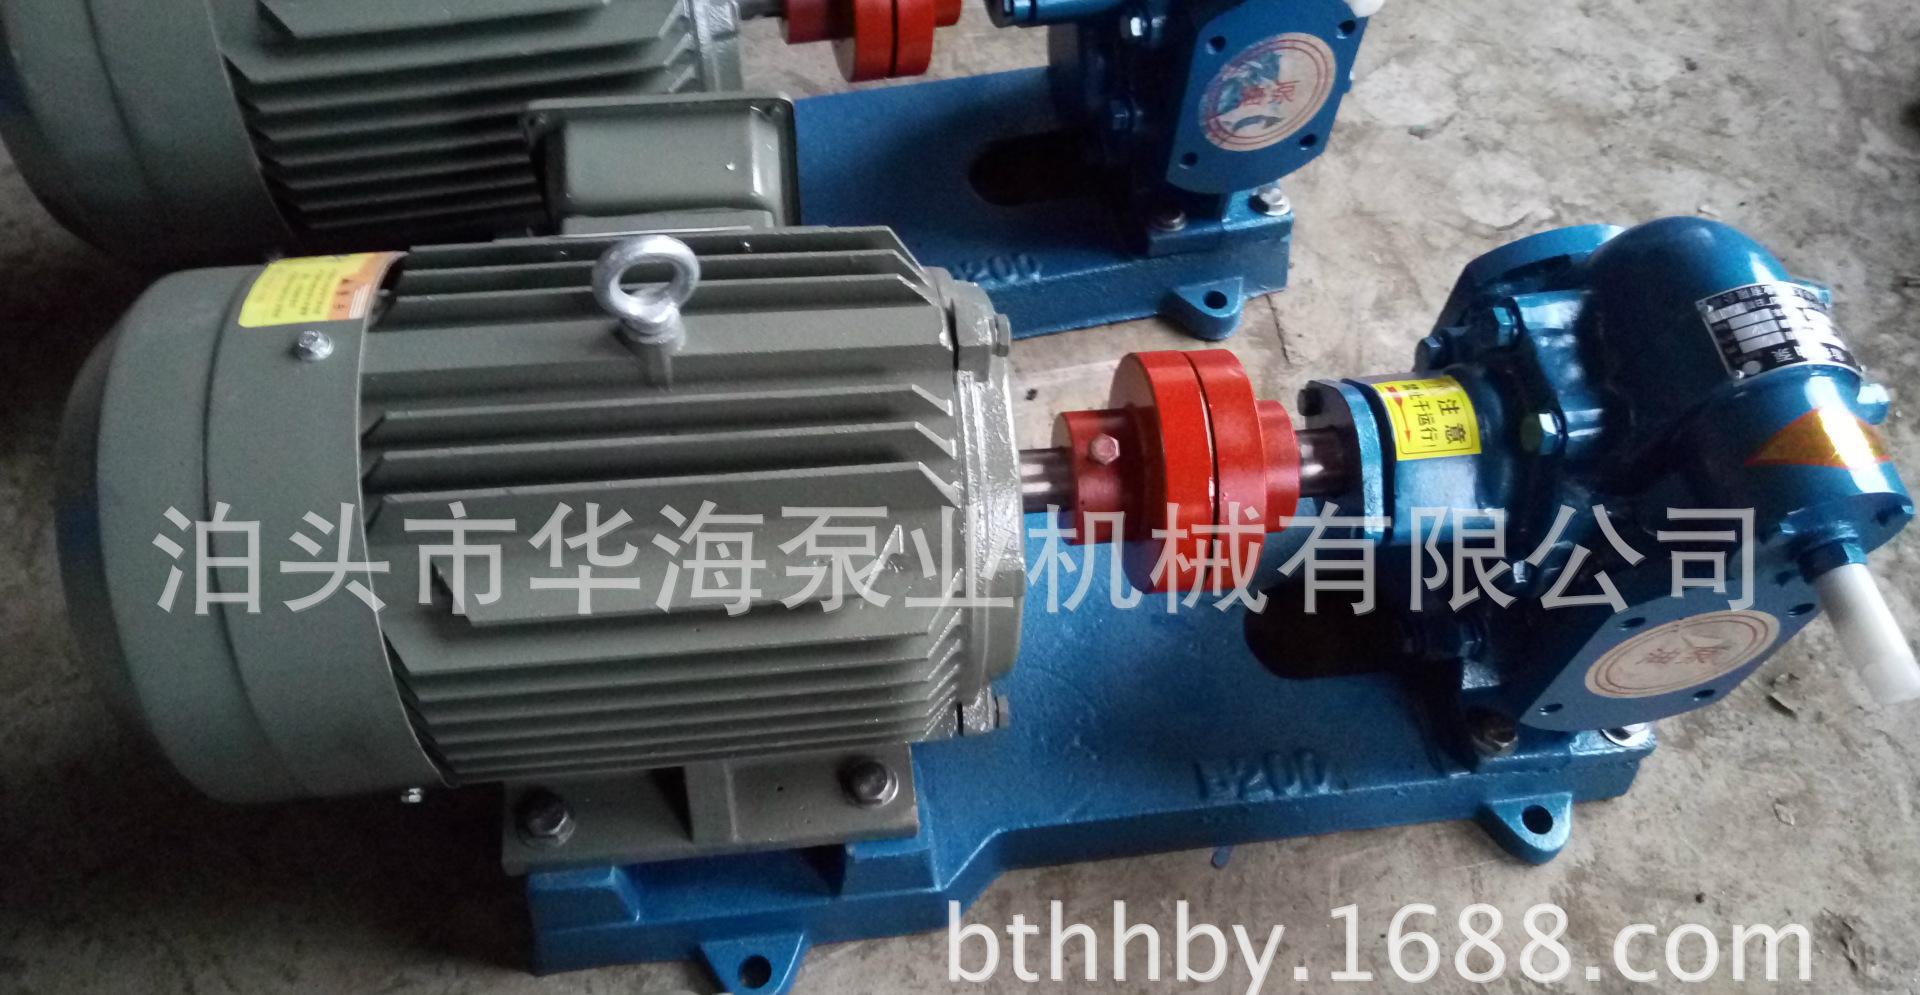 华海kcB960系列齿轮泵 不锈钢齿轮泵 大小型齿轮油泵现货